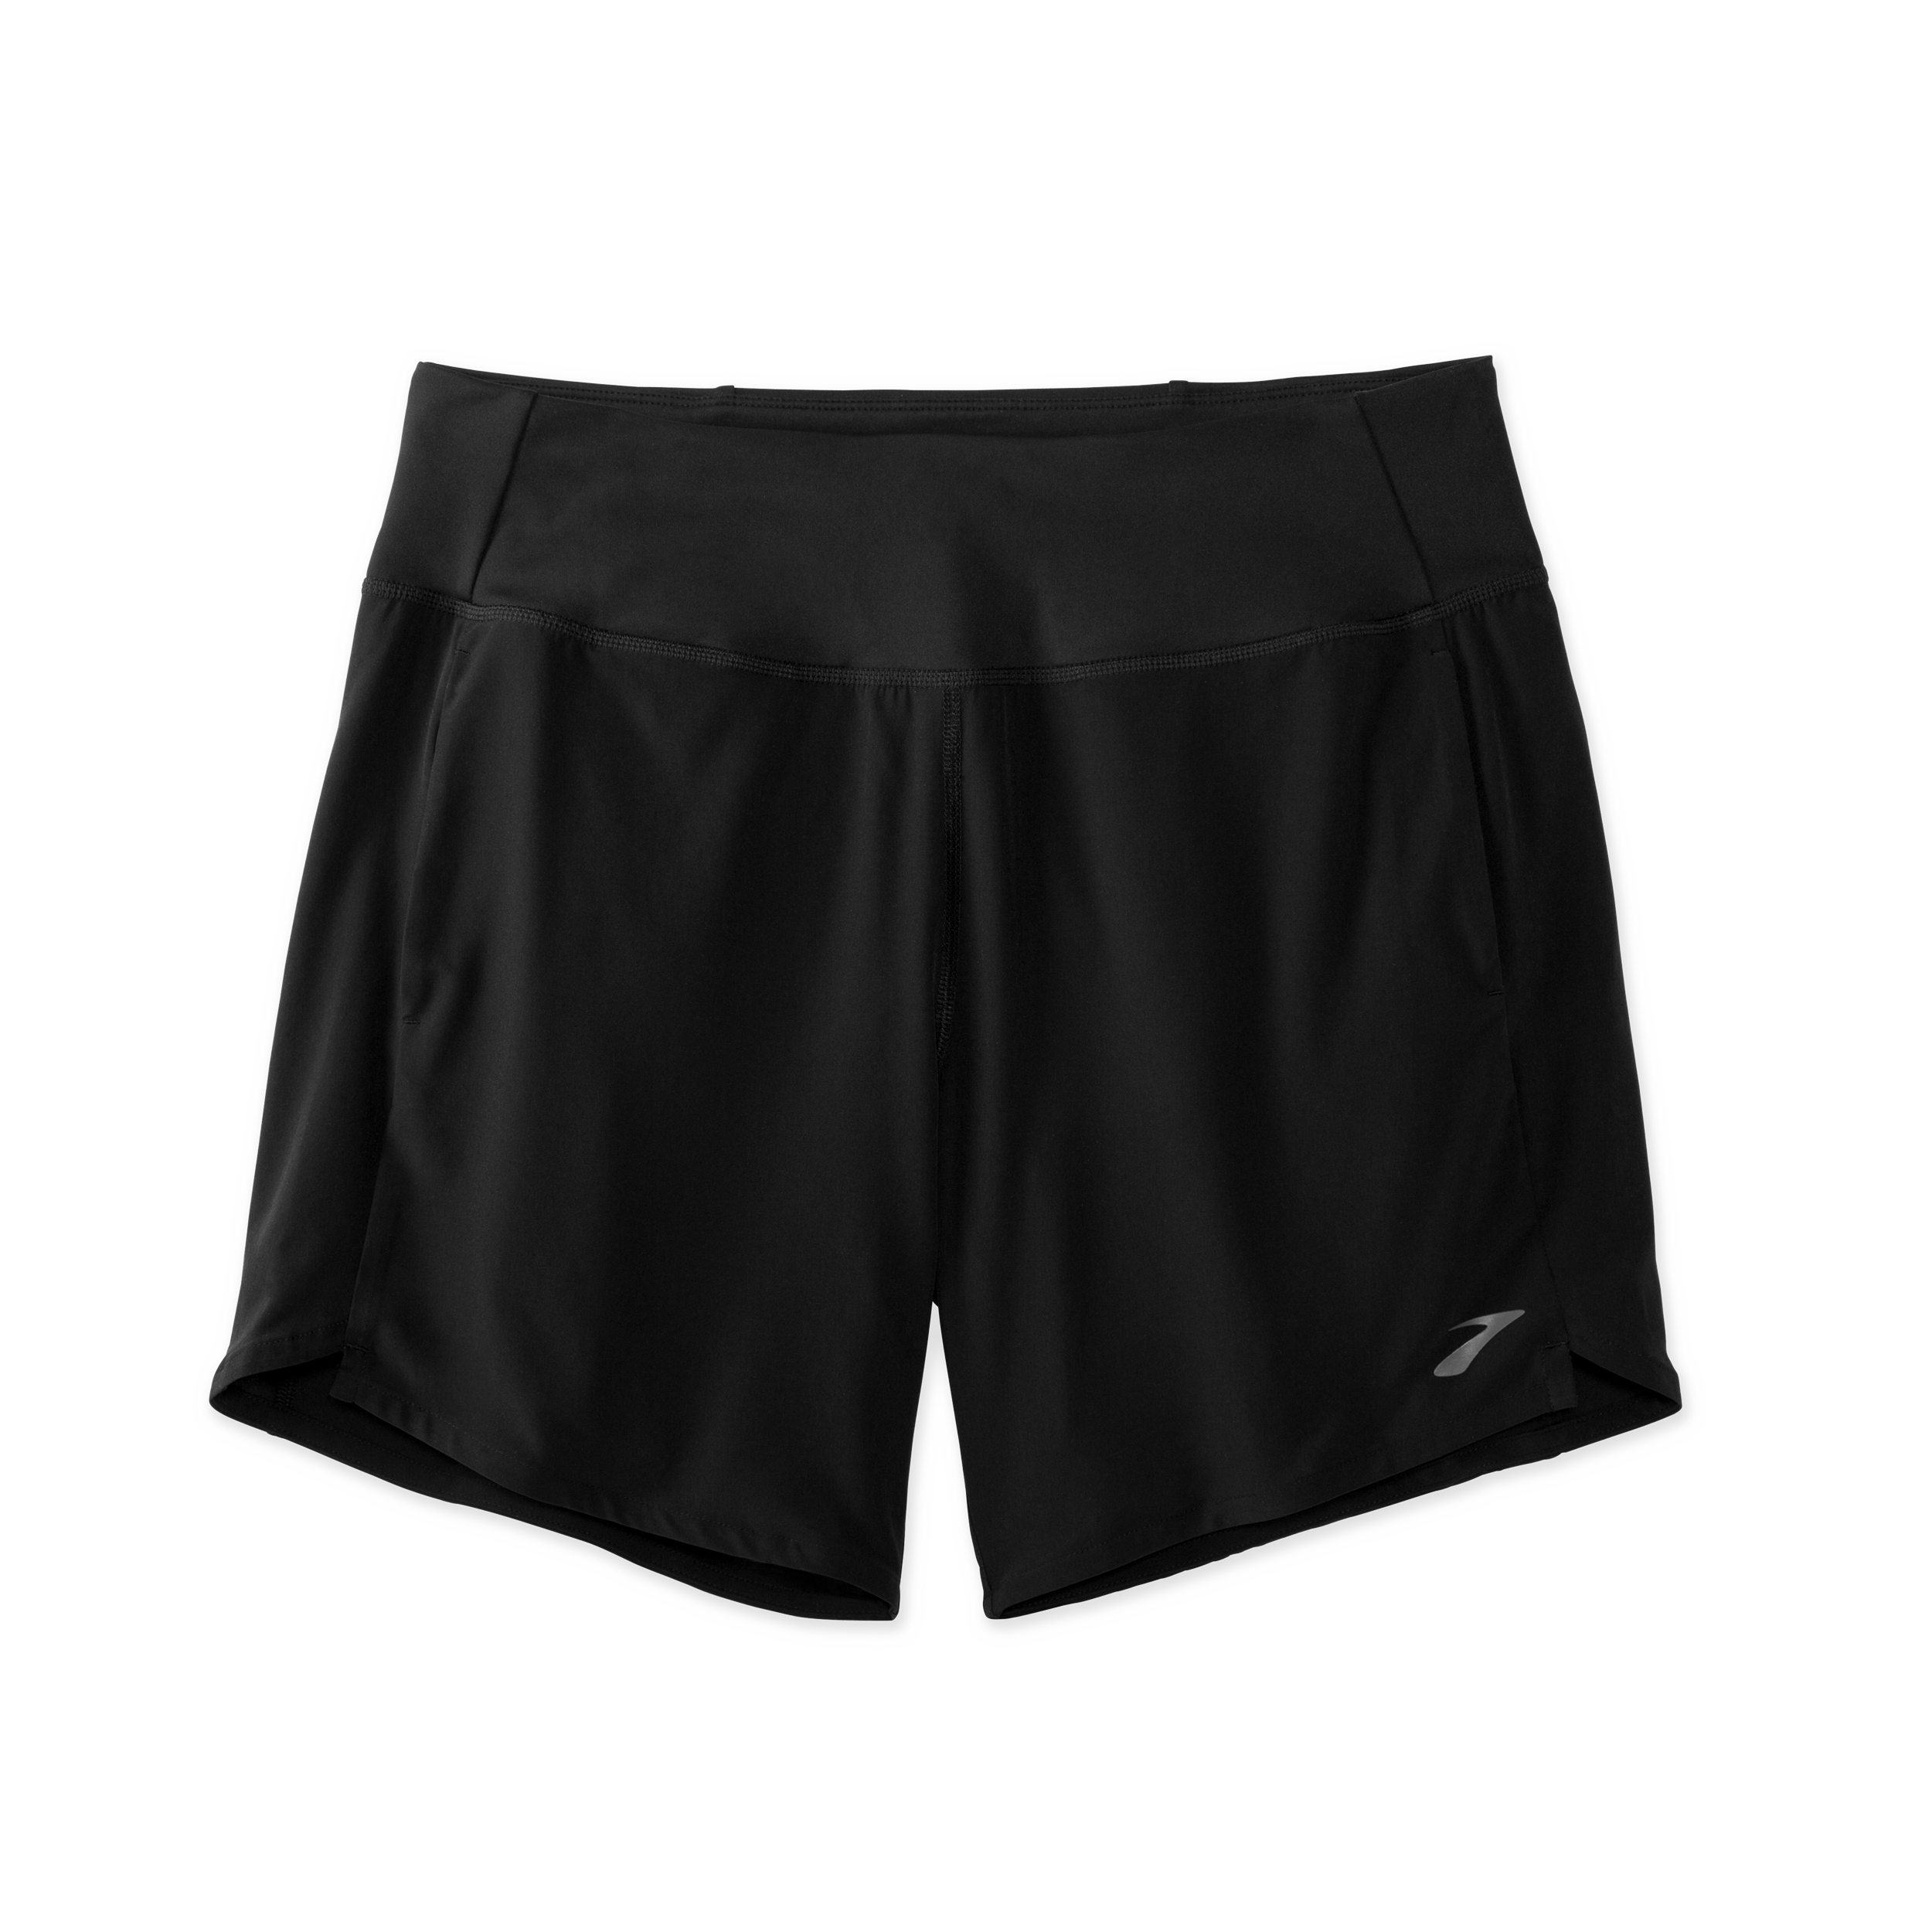 Black Running Shorts.